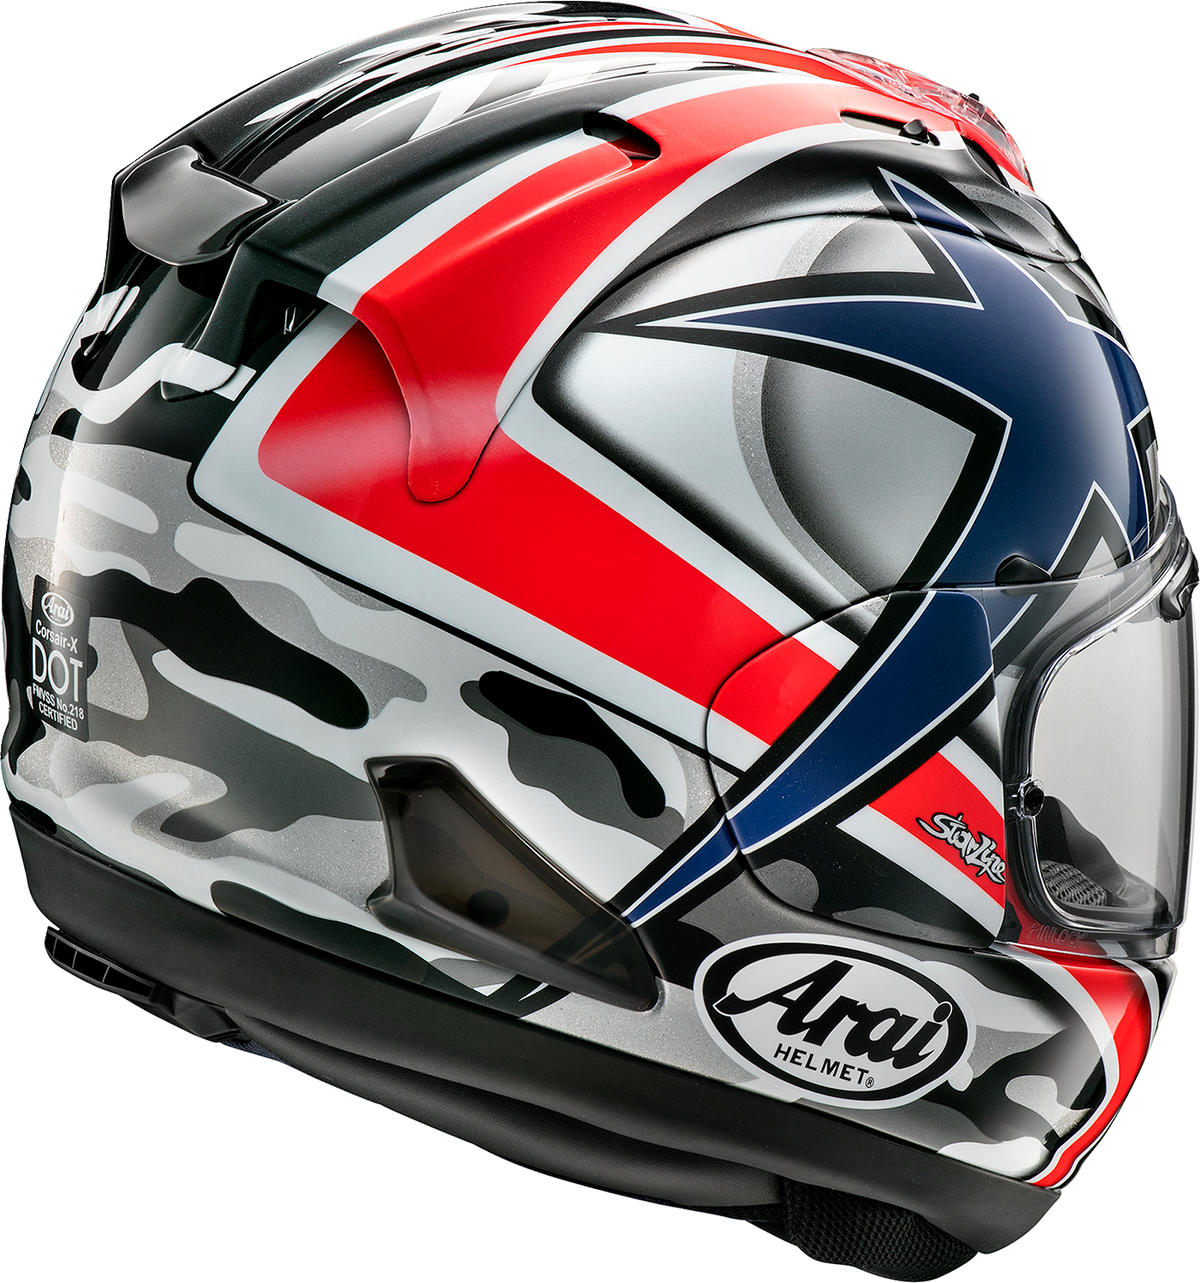 Corsair-X Helmet - Hayden Laguna